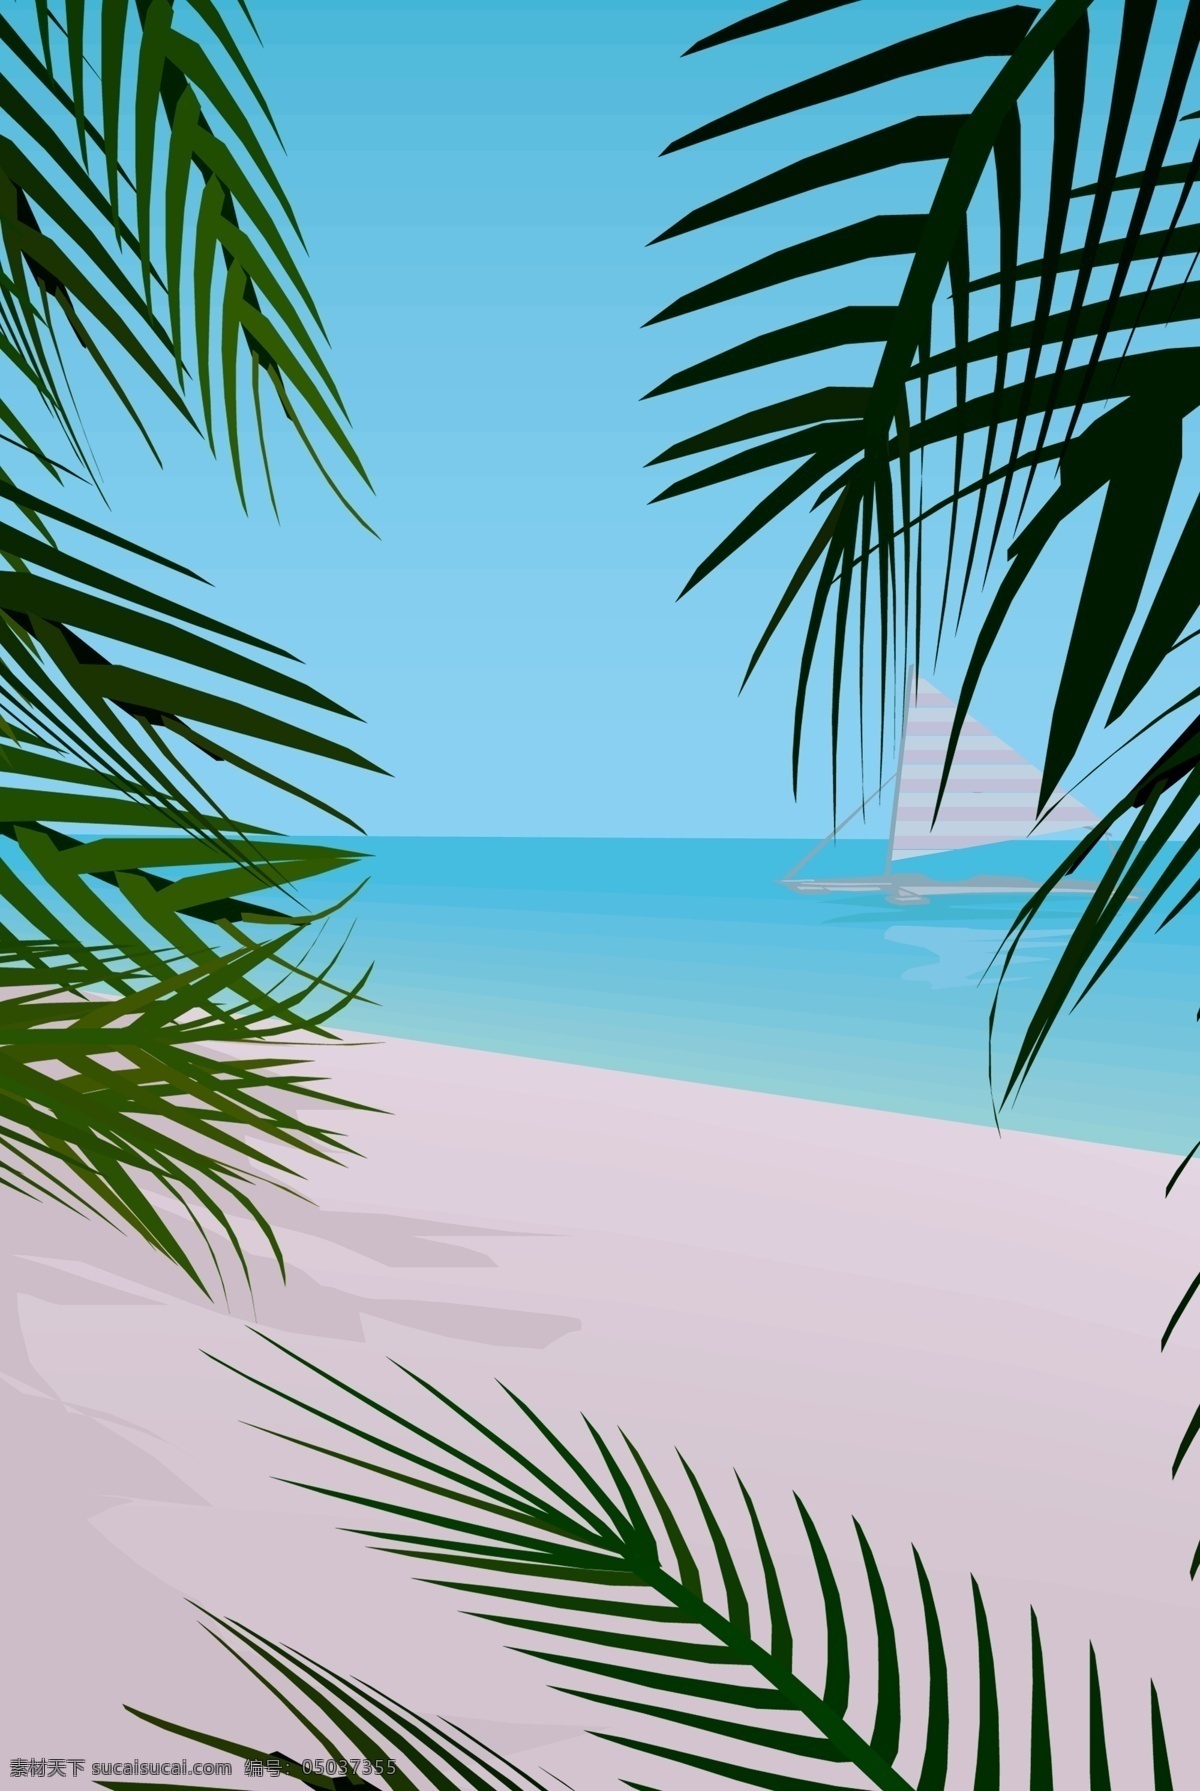 椰子树 简约 唯美 广告 背景 图 海边 沙滩 剪影 卡通 手绘 文艺 广告背景图